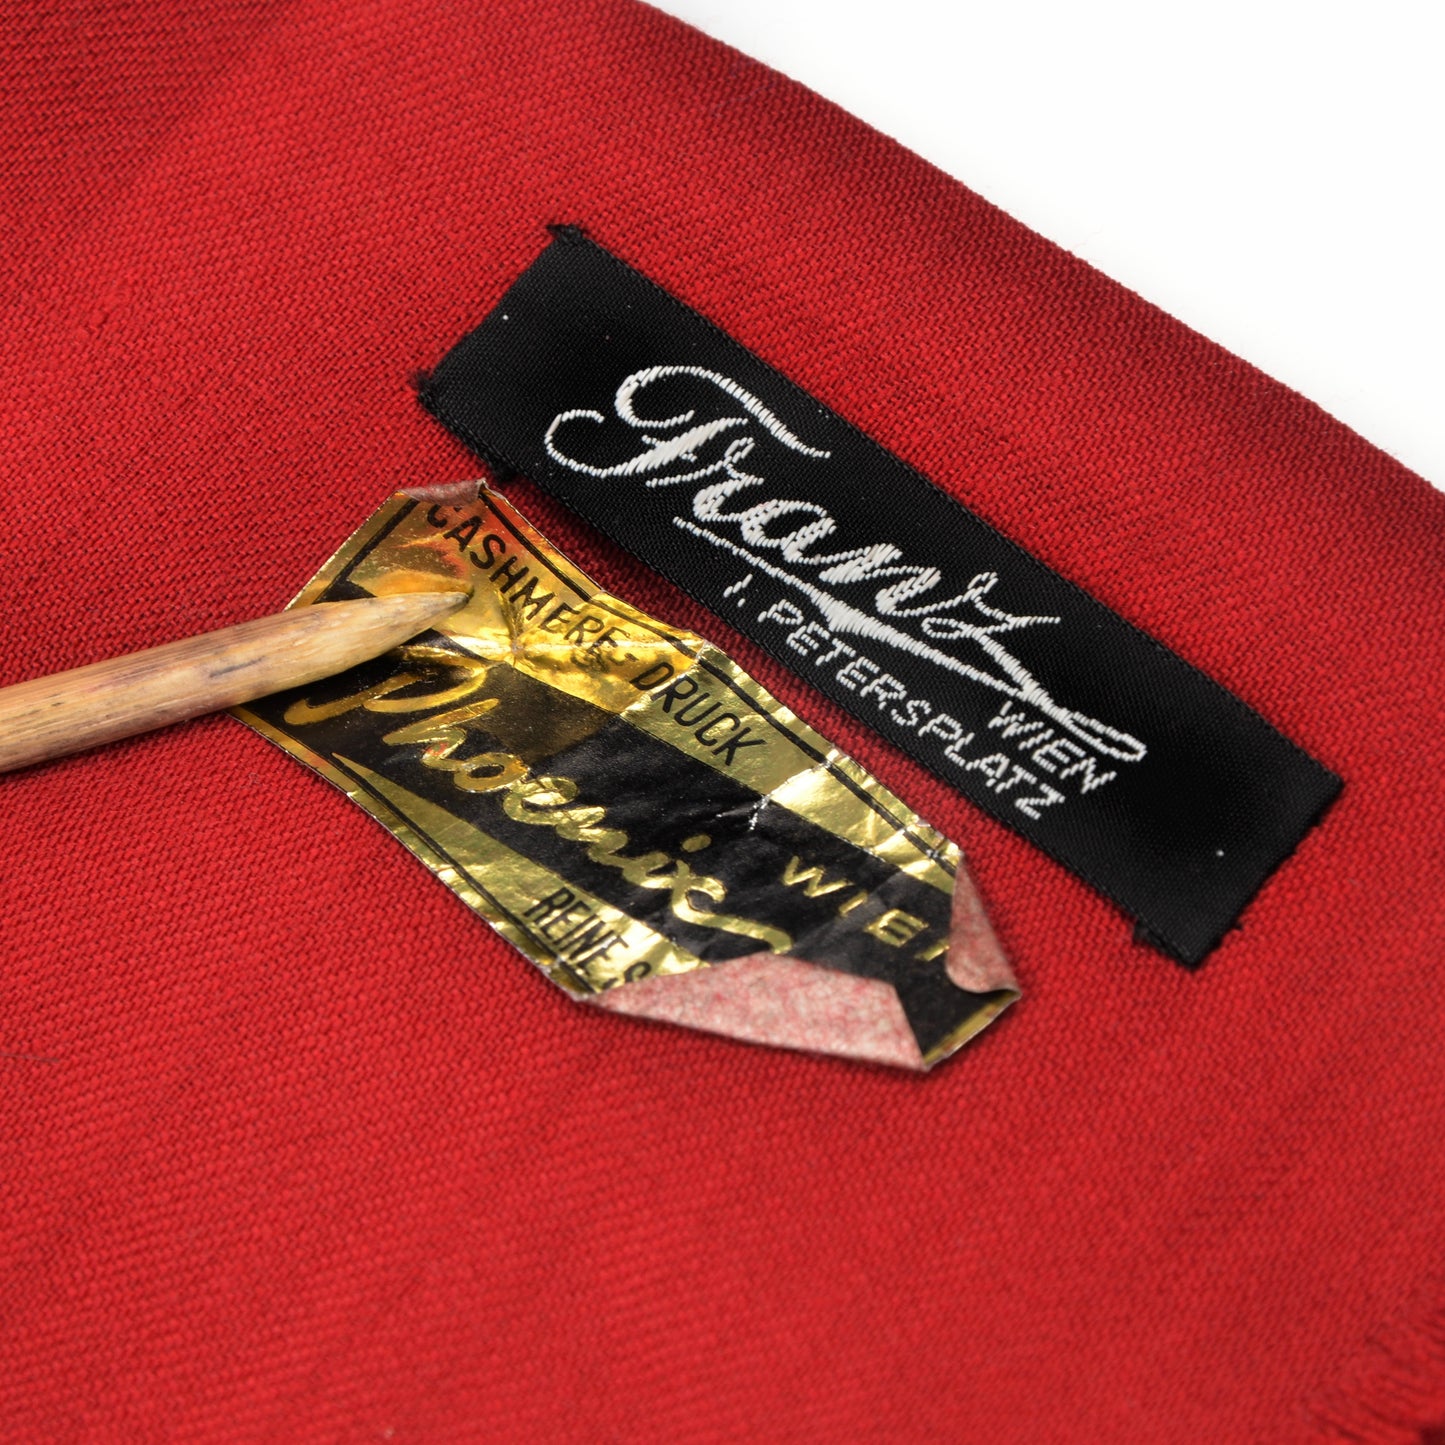 Challis-Kleiderschal aus Wolle - Rotes und grünes Medaillon